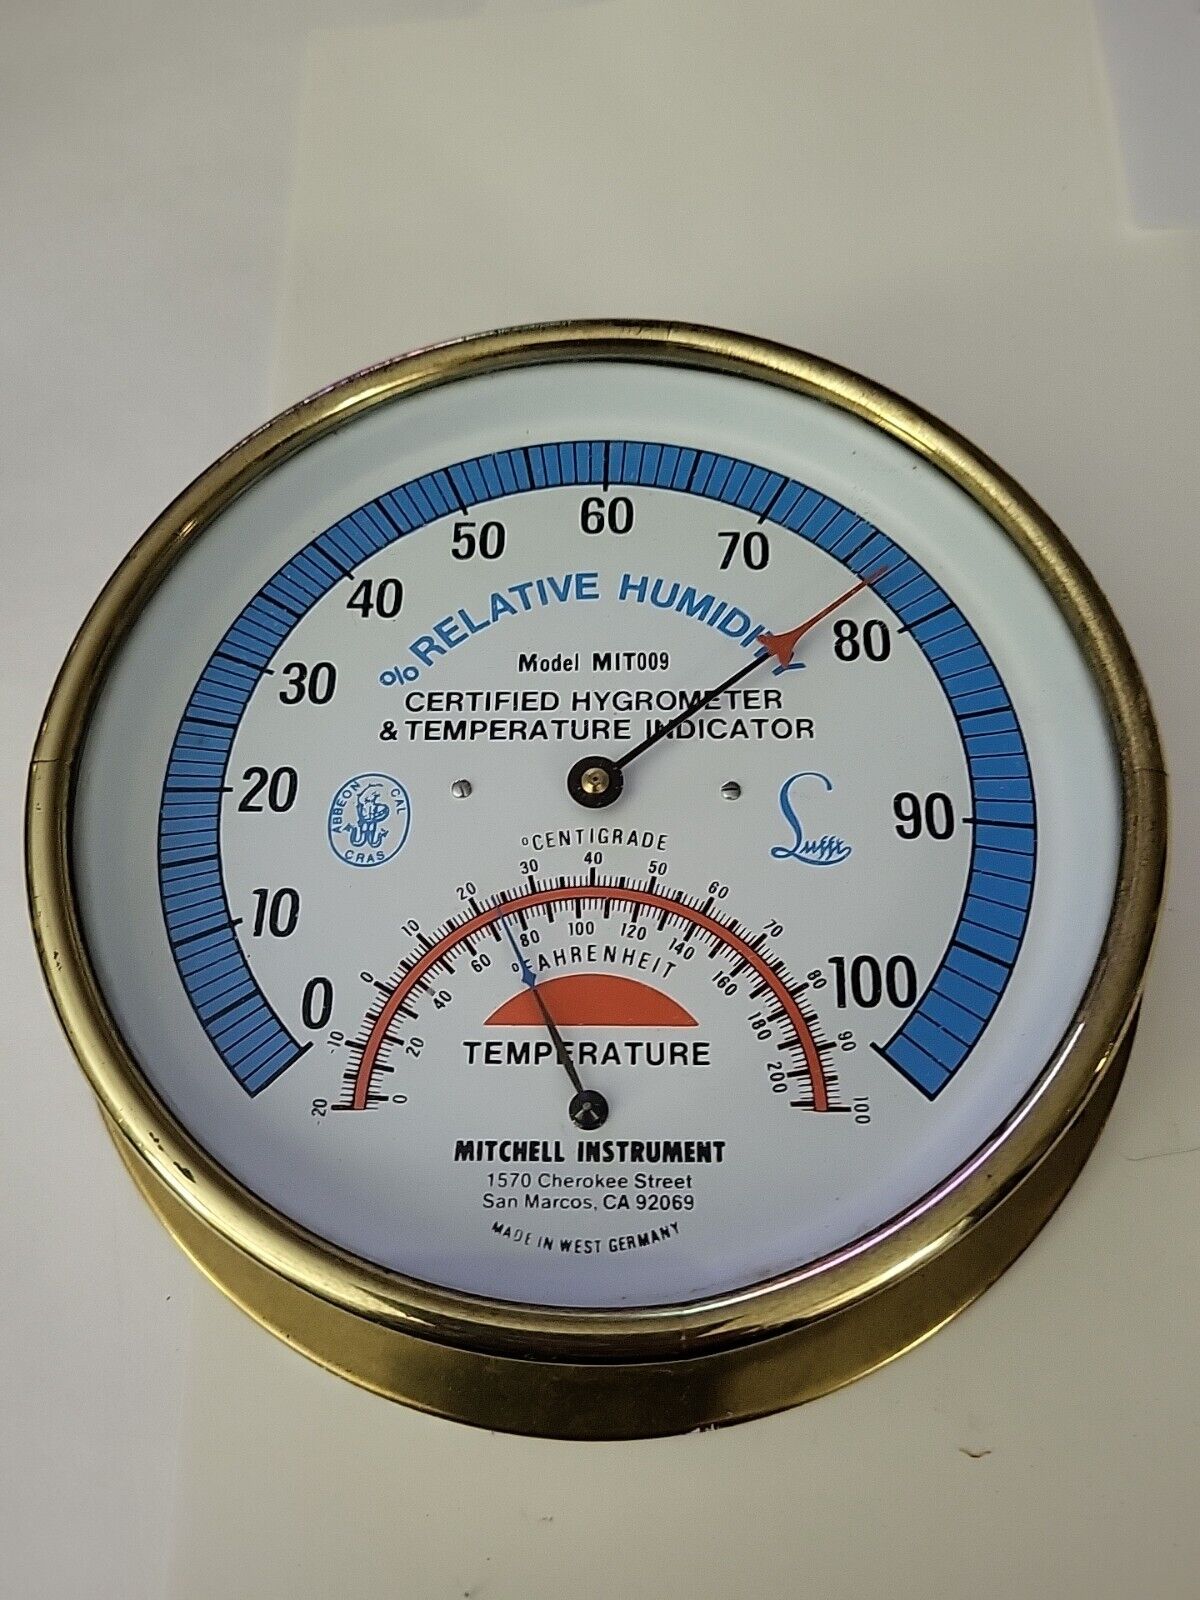 Vintage Hygrometer Model MIT009